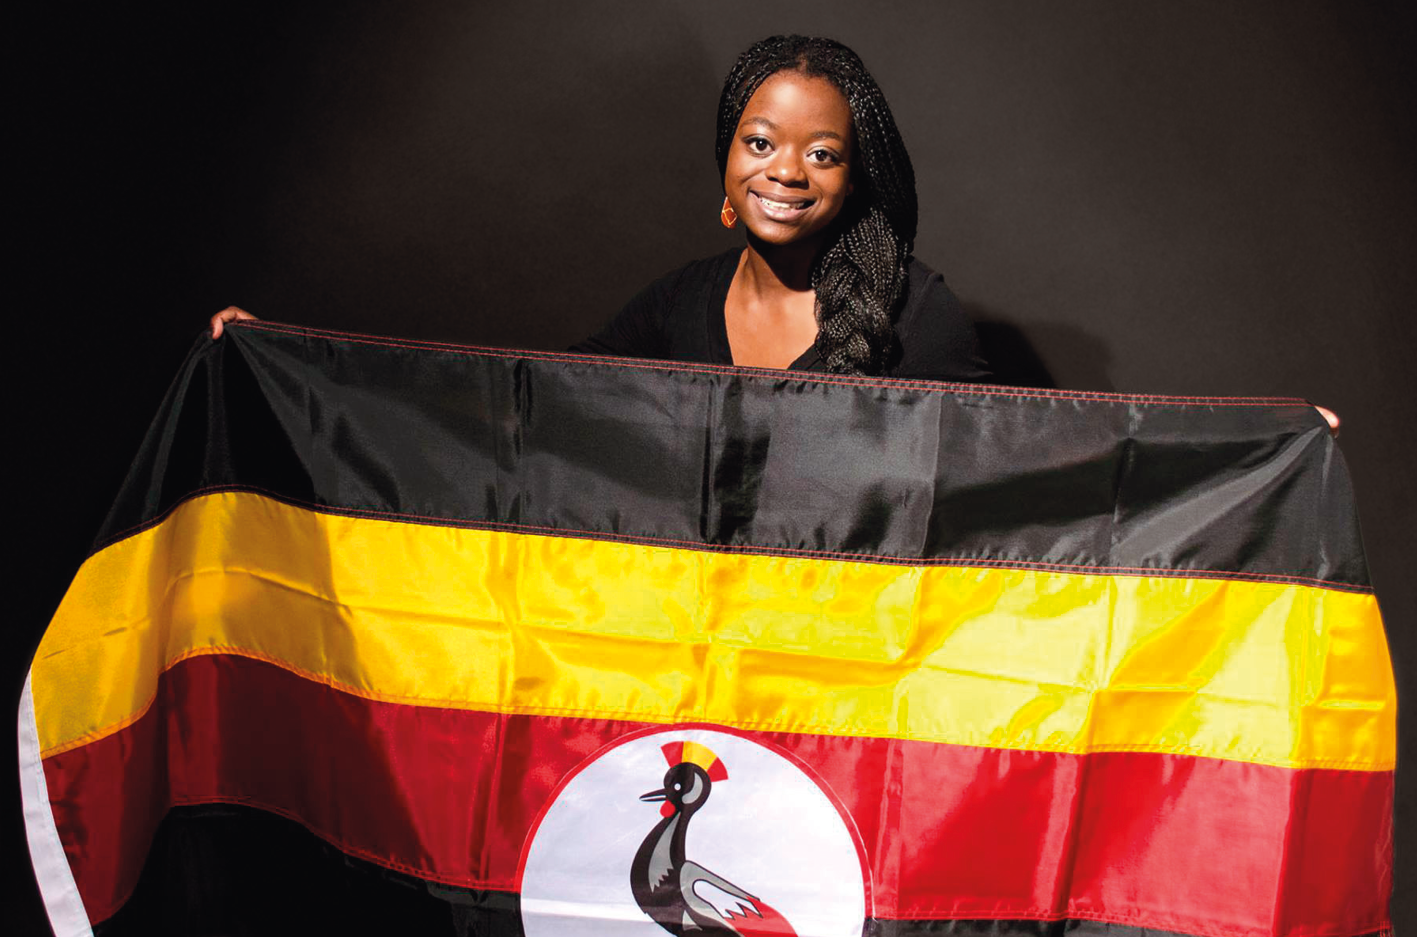 Fotografia. Mulher sorridente, segurando a bandeira de Uganda. Composta por faixa horizontais, em preto, amarelo, vermelho e preto. No centro um círculo branco com uma ave preta desenhada.